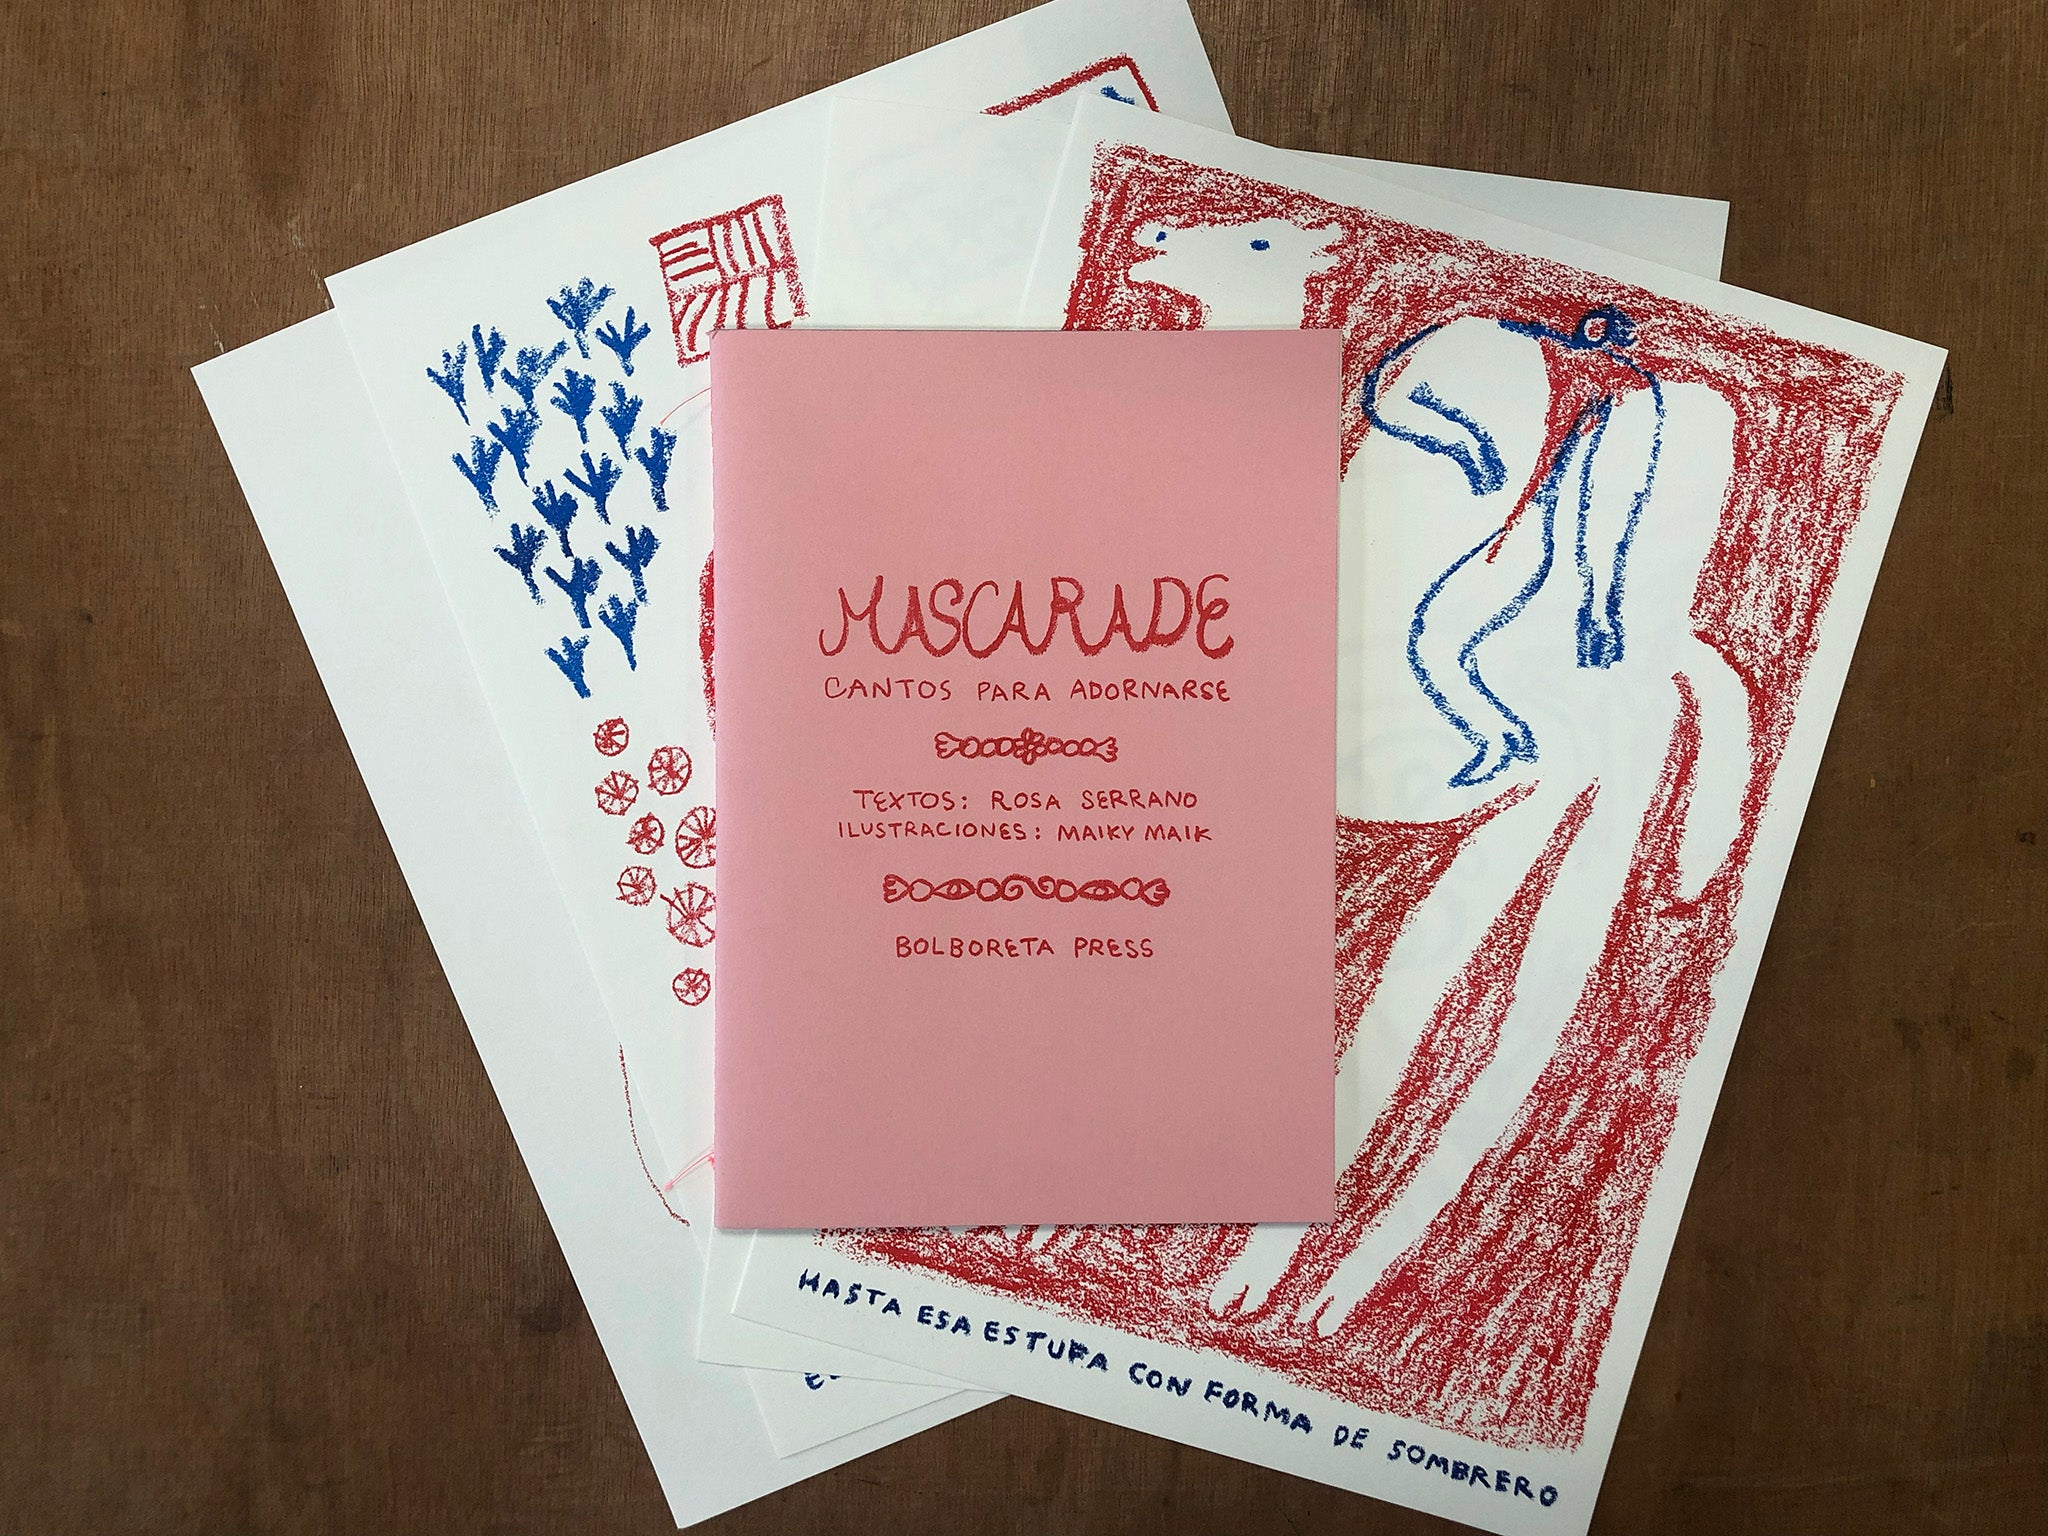 MASQUERADE. CANTOS PARA ADORNARSE by Rosa Serrano and Maiky Maik